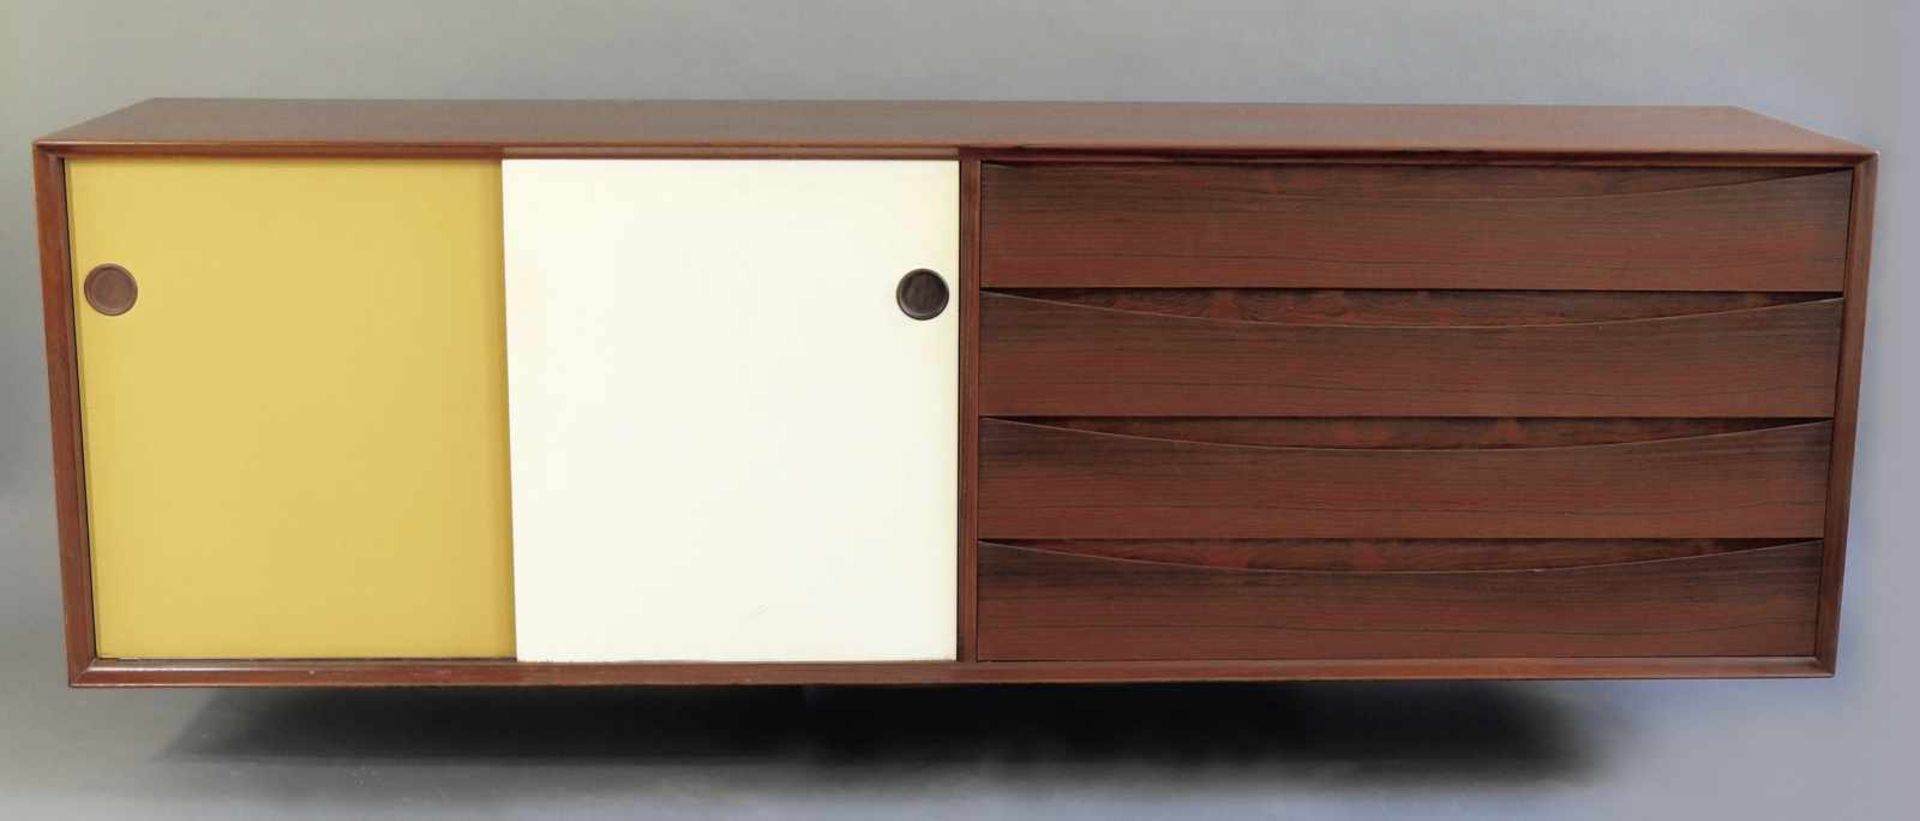 Arne VodderSibast Furniture Co., DänemarkArne Vodder Sibast Sideboard coloured DoorsSideboard with